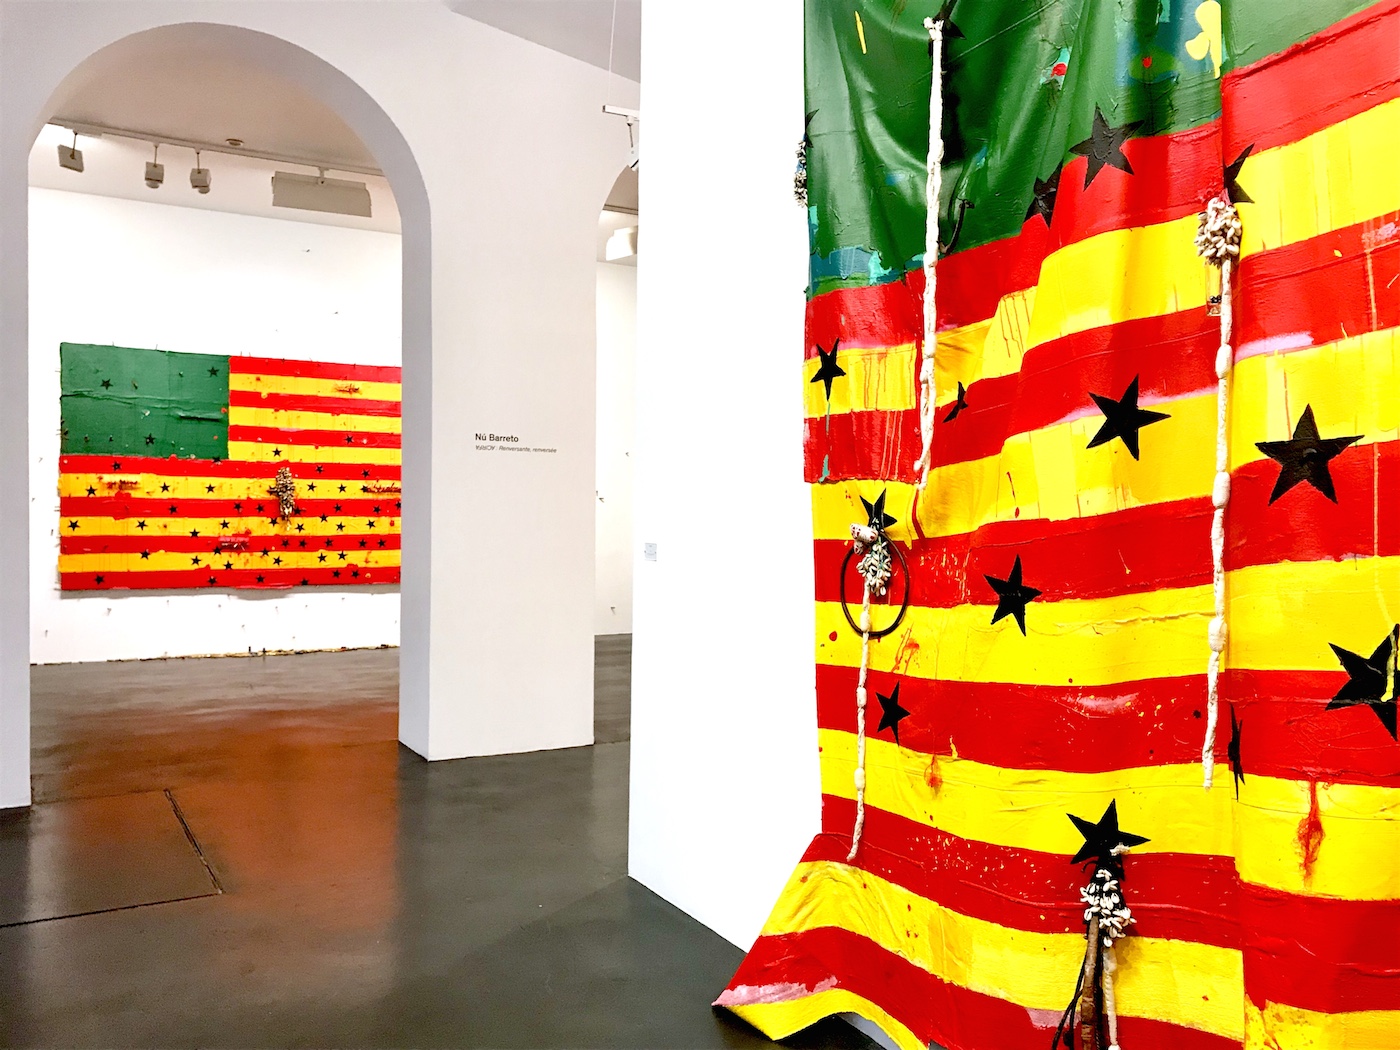 Nú Barreto, Africa-renversante, renversee at Galerie Nathalie Obadia, Paris 